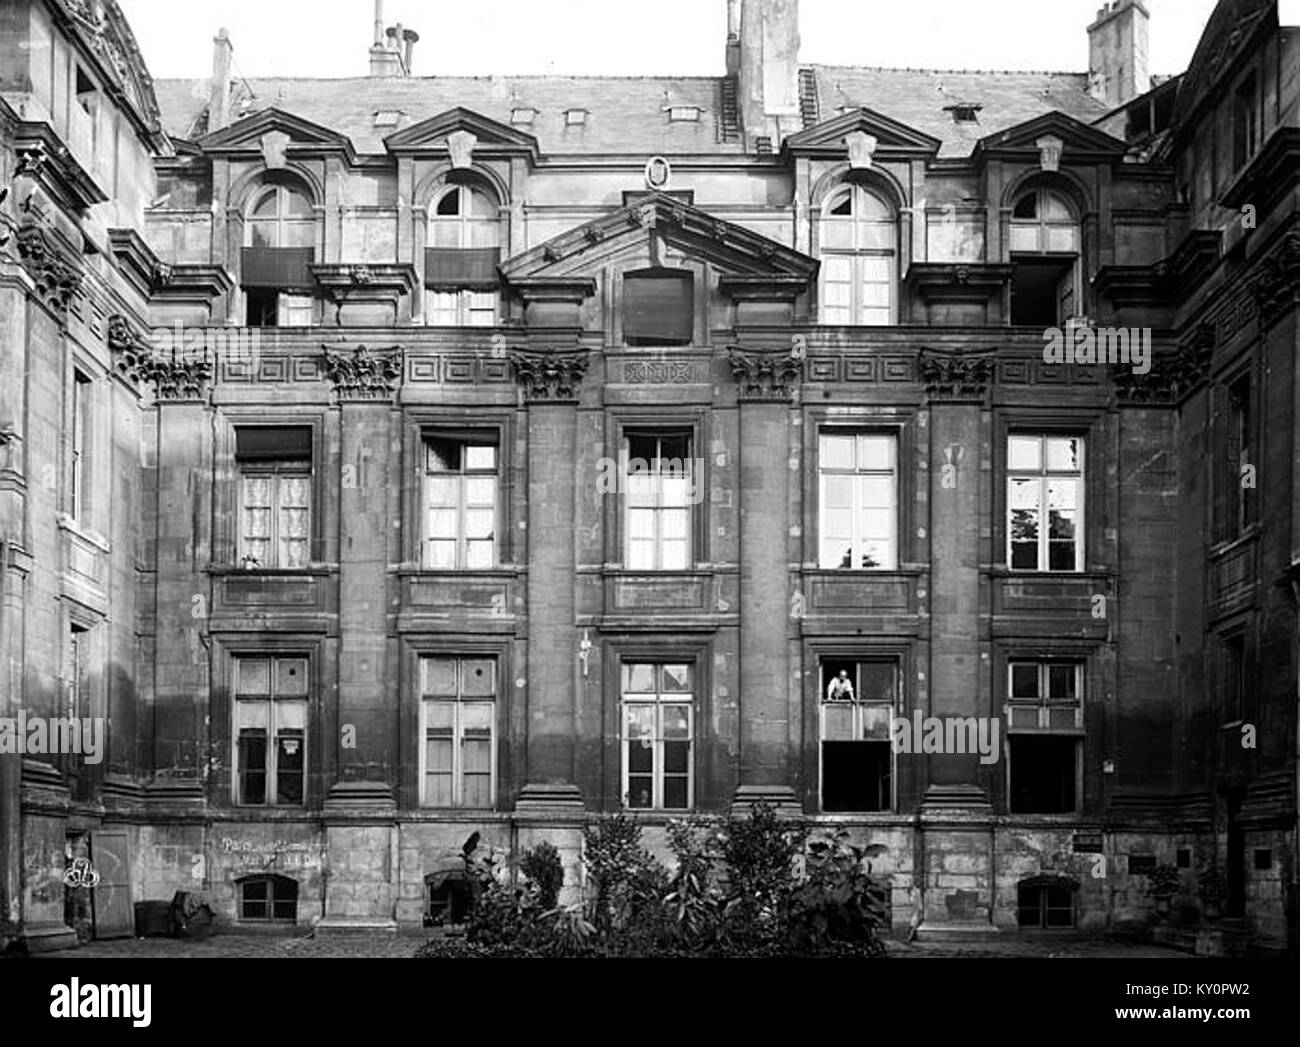 Hôtel Lamoignon - Façade sur cour - Paris - Médiathèque de l'architecture et du patrimoine - APMH00009145 Stock Photo